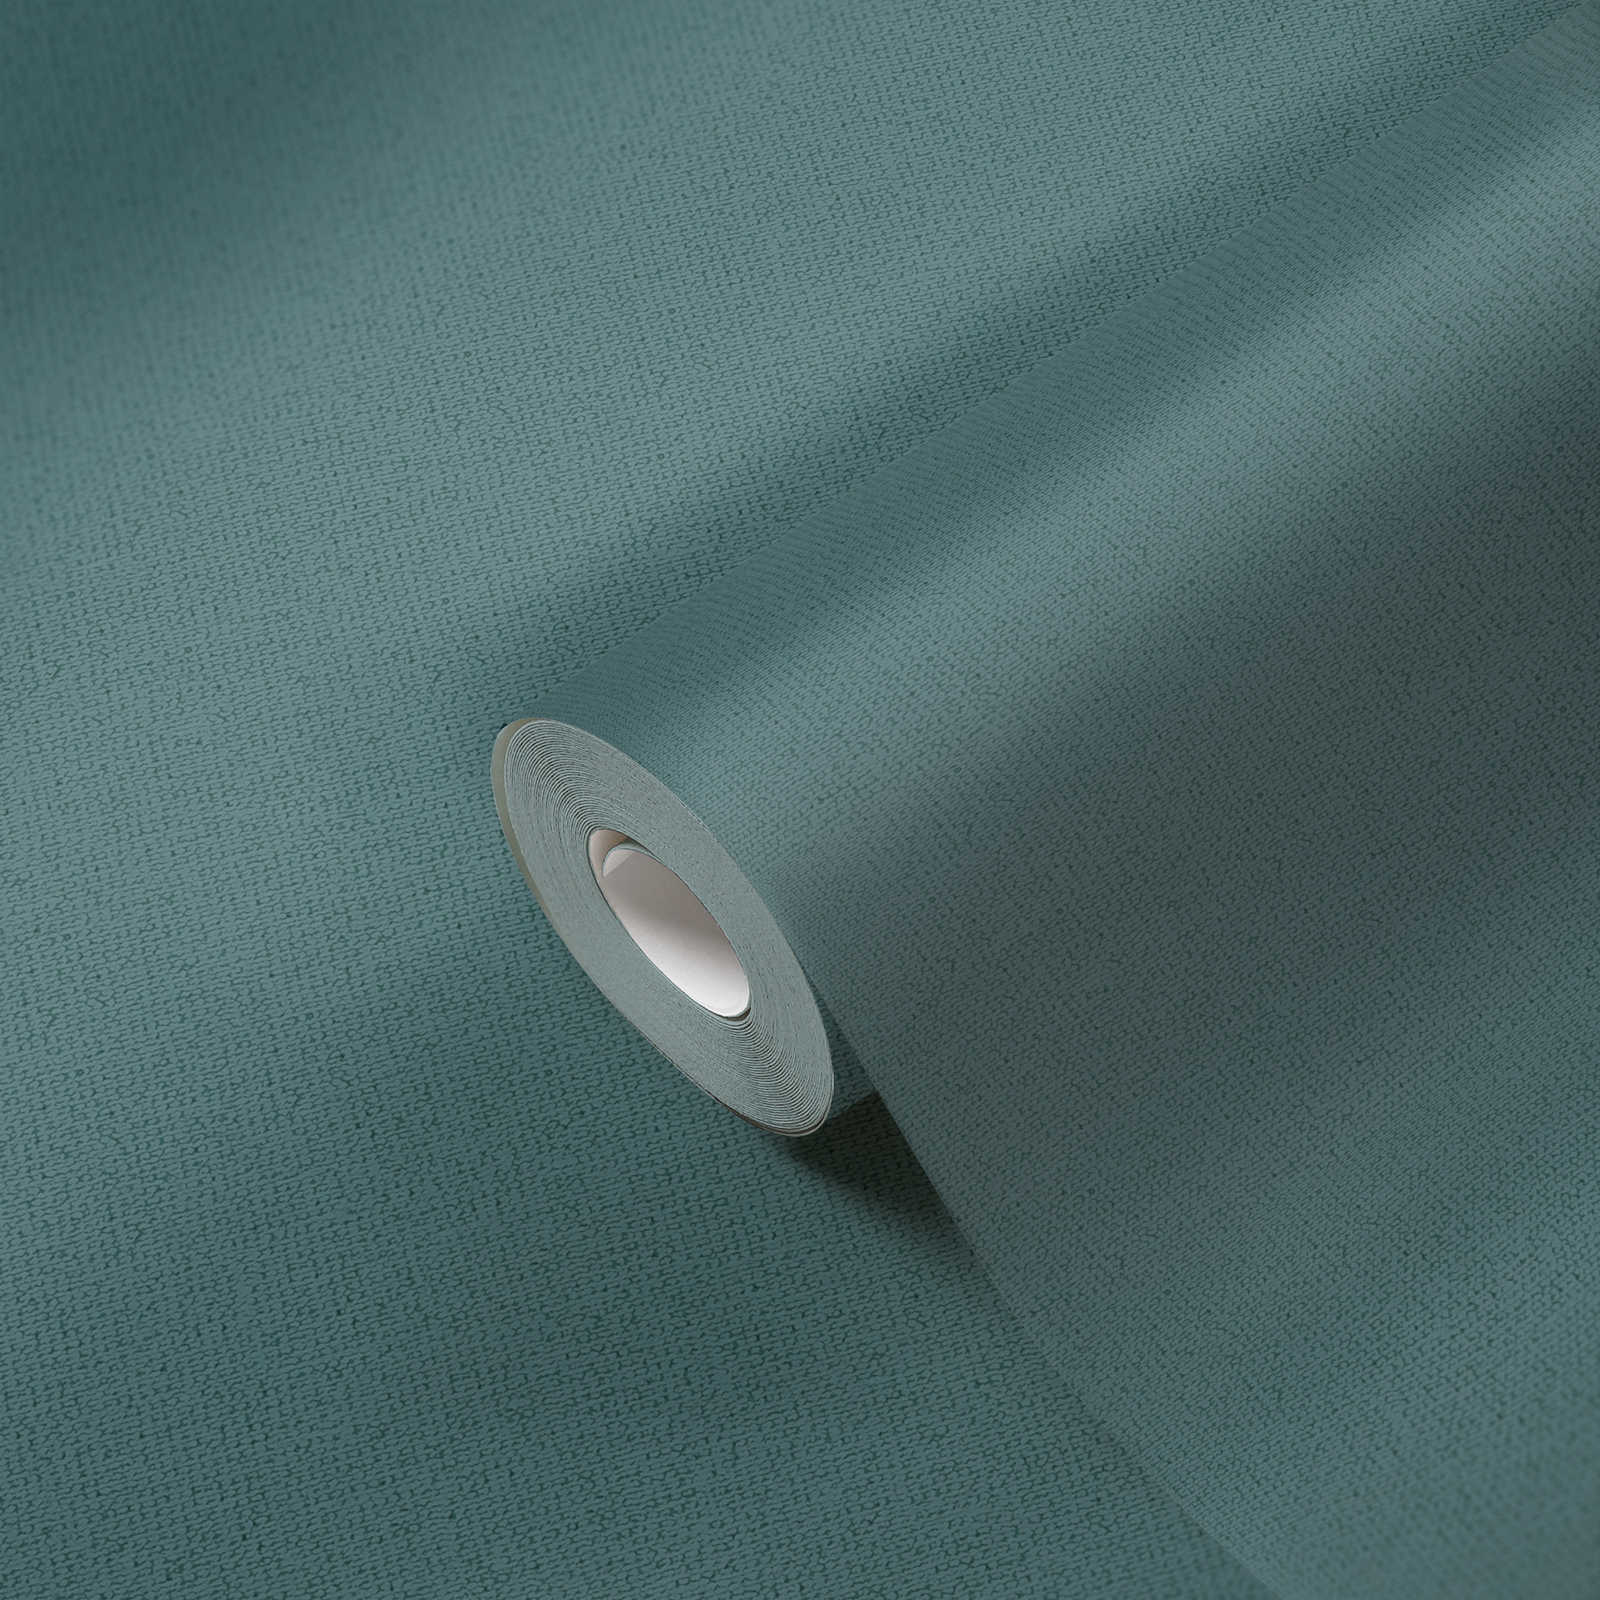             Papier peint de style scandinave chiné & mat - bleu, pétrole
        